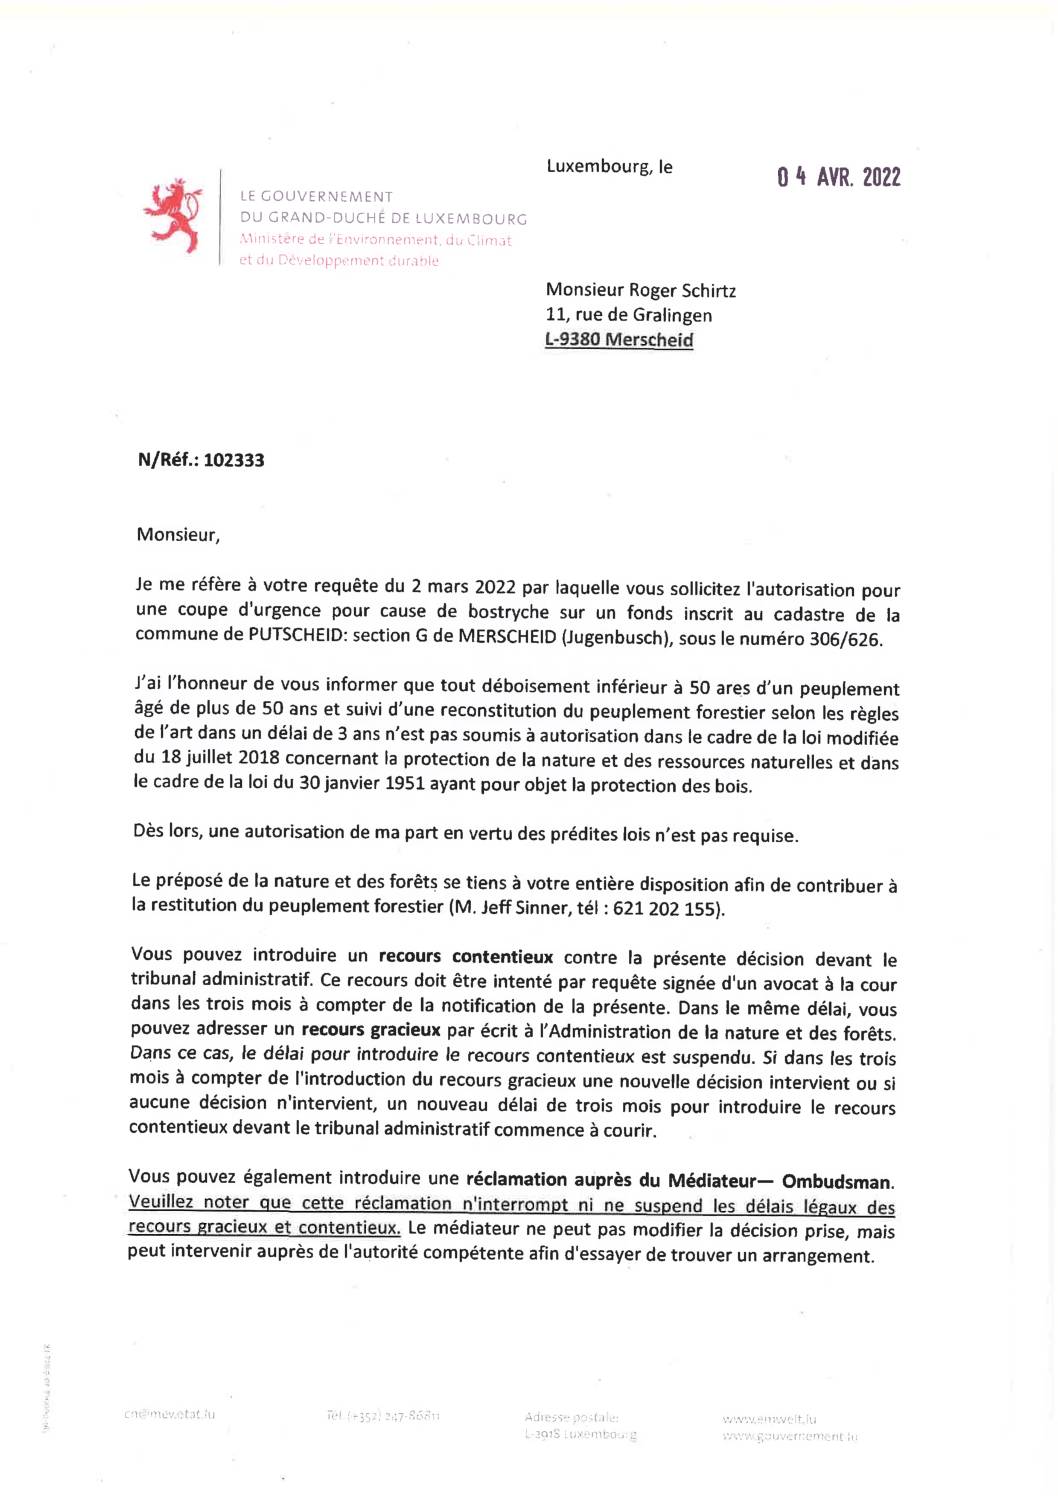 Notification de decision pour le dossier 102333 Coupe d'urgence pour cause de Bostryche - Jugenbusch